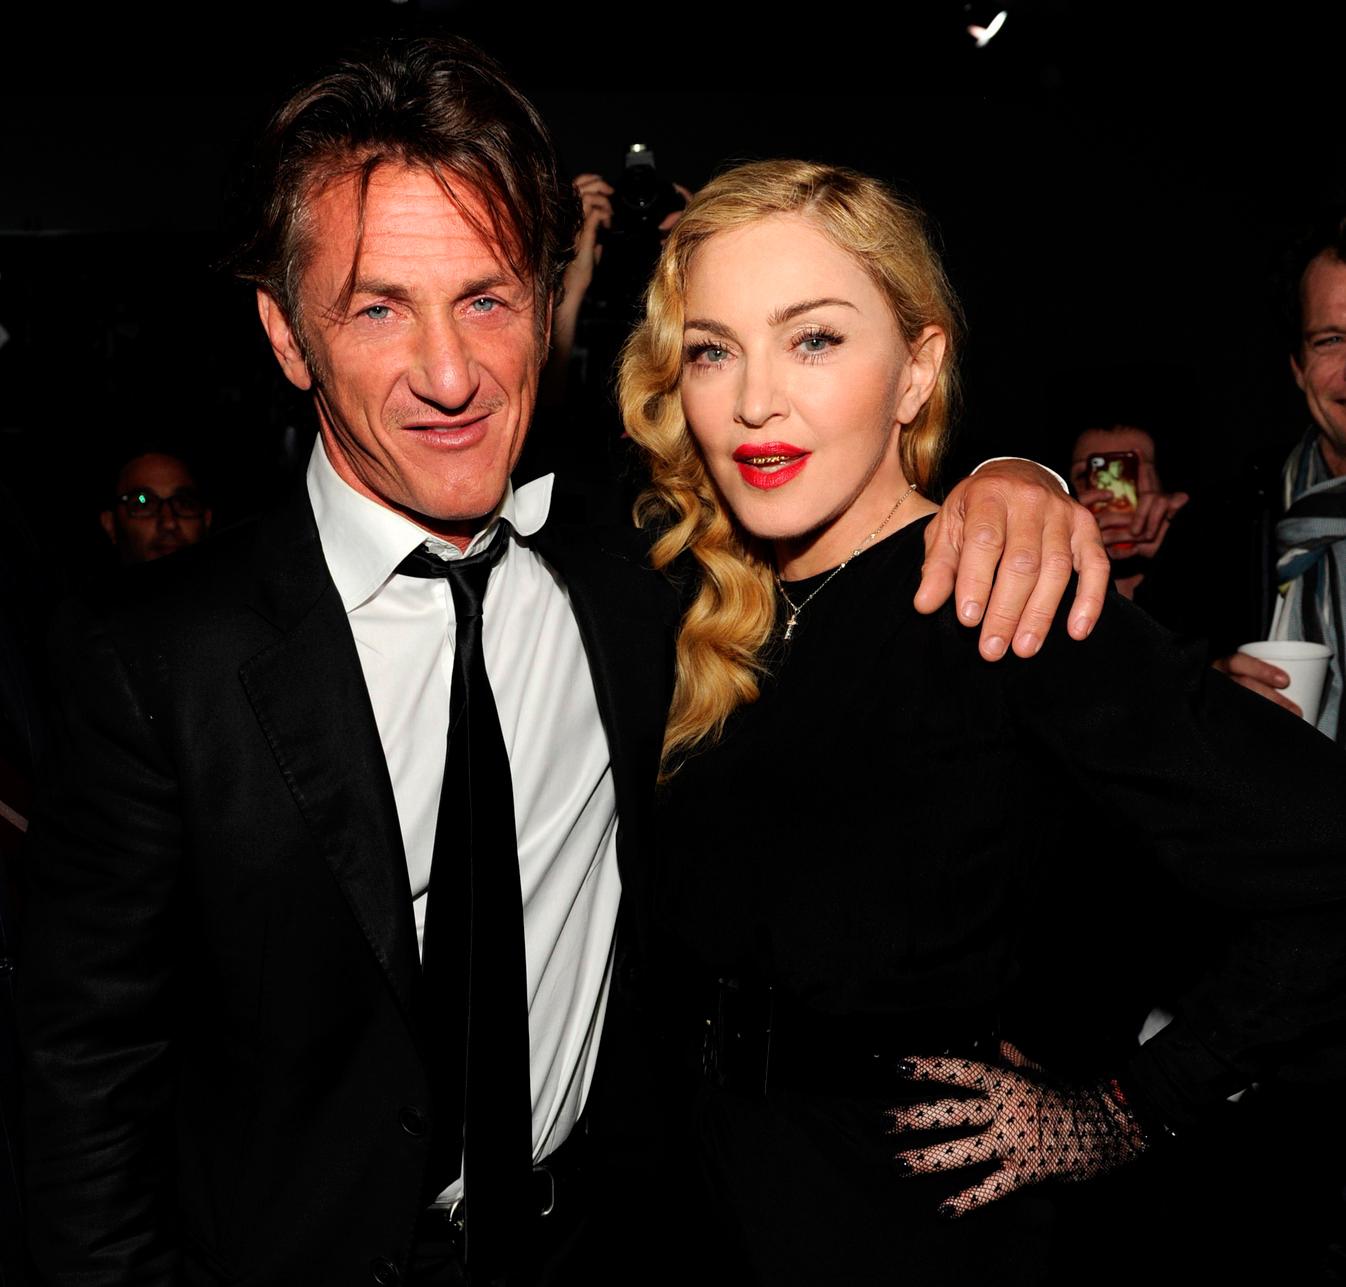 Sean Penn och Madonna satte fyr på nya romansrykten när de 2013 kramades på ett galleri i New York.